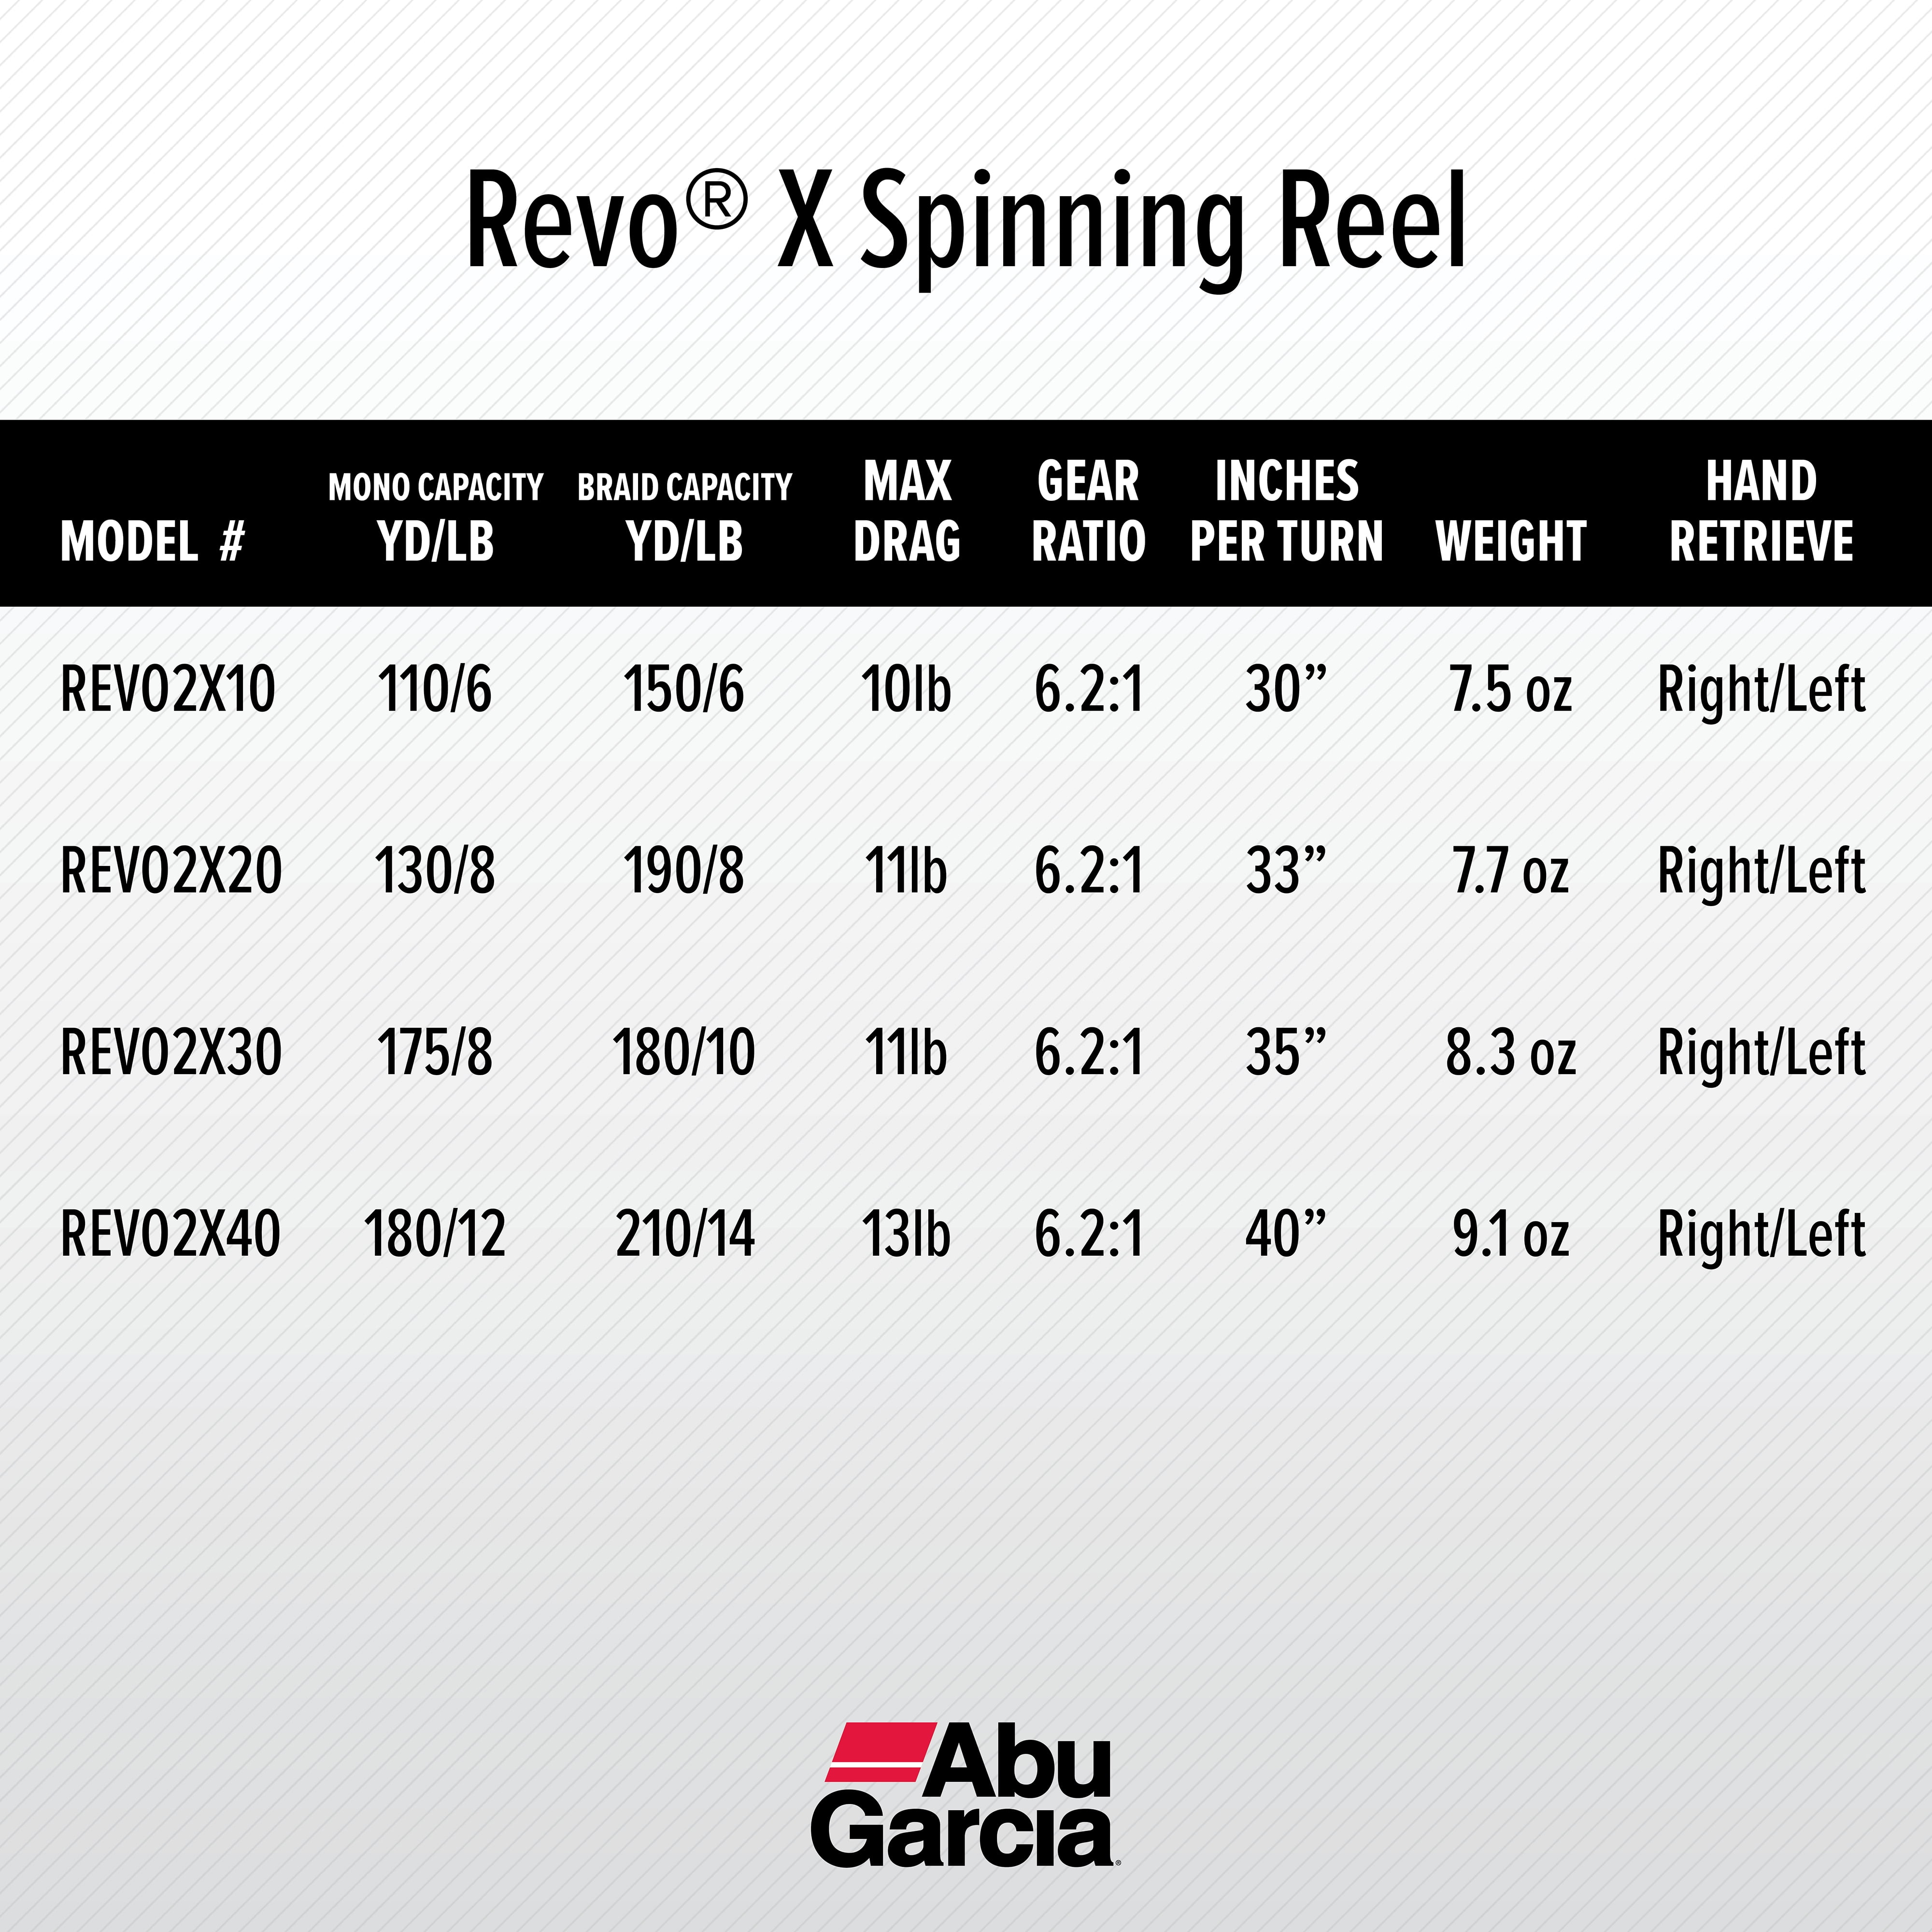 Abu Garcia Revo X Spinning Fishing Reel, Size 30 (1430447